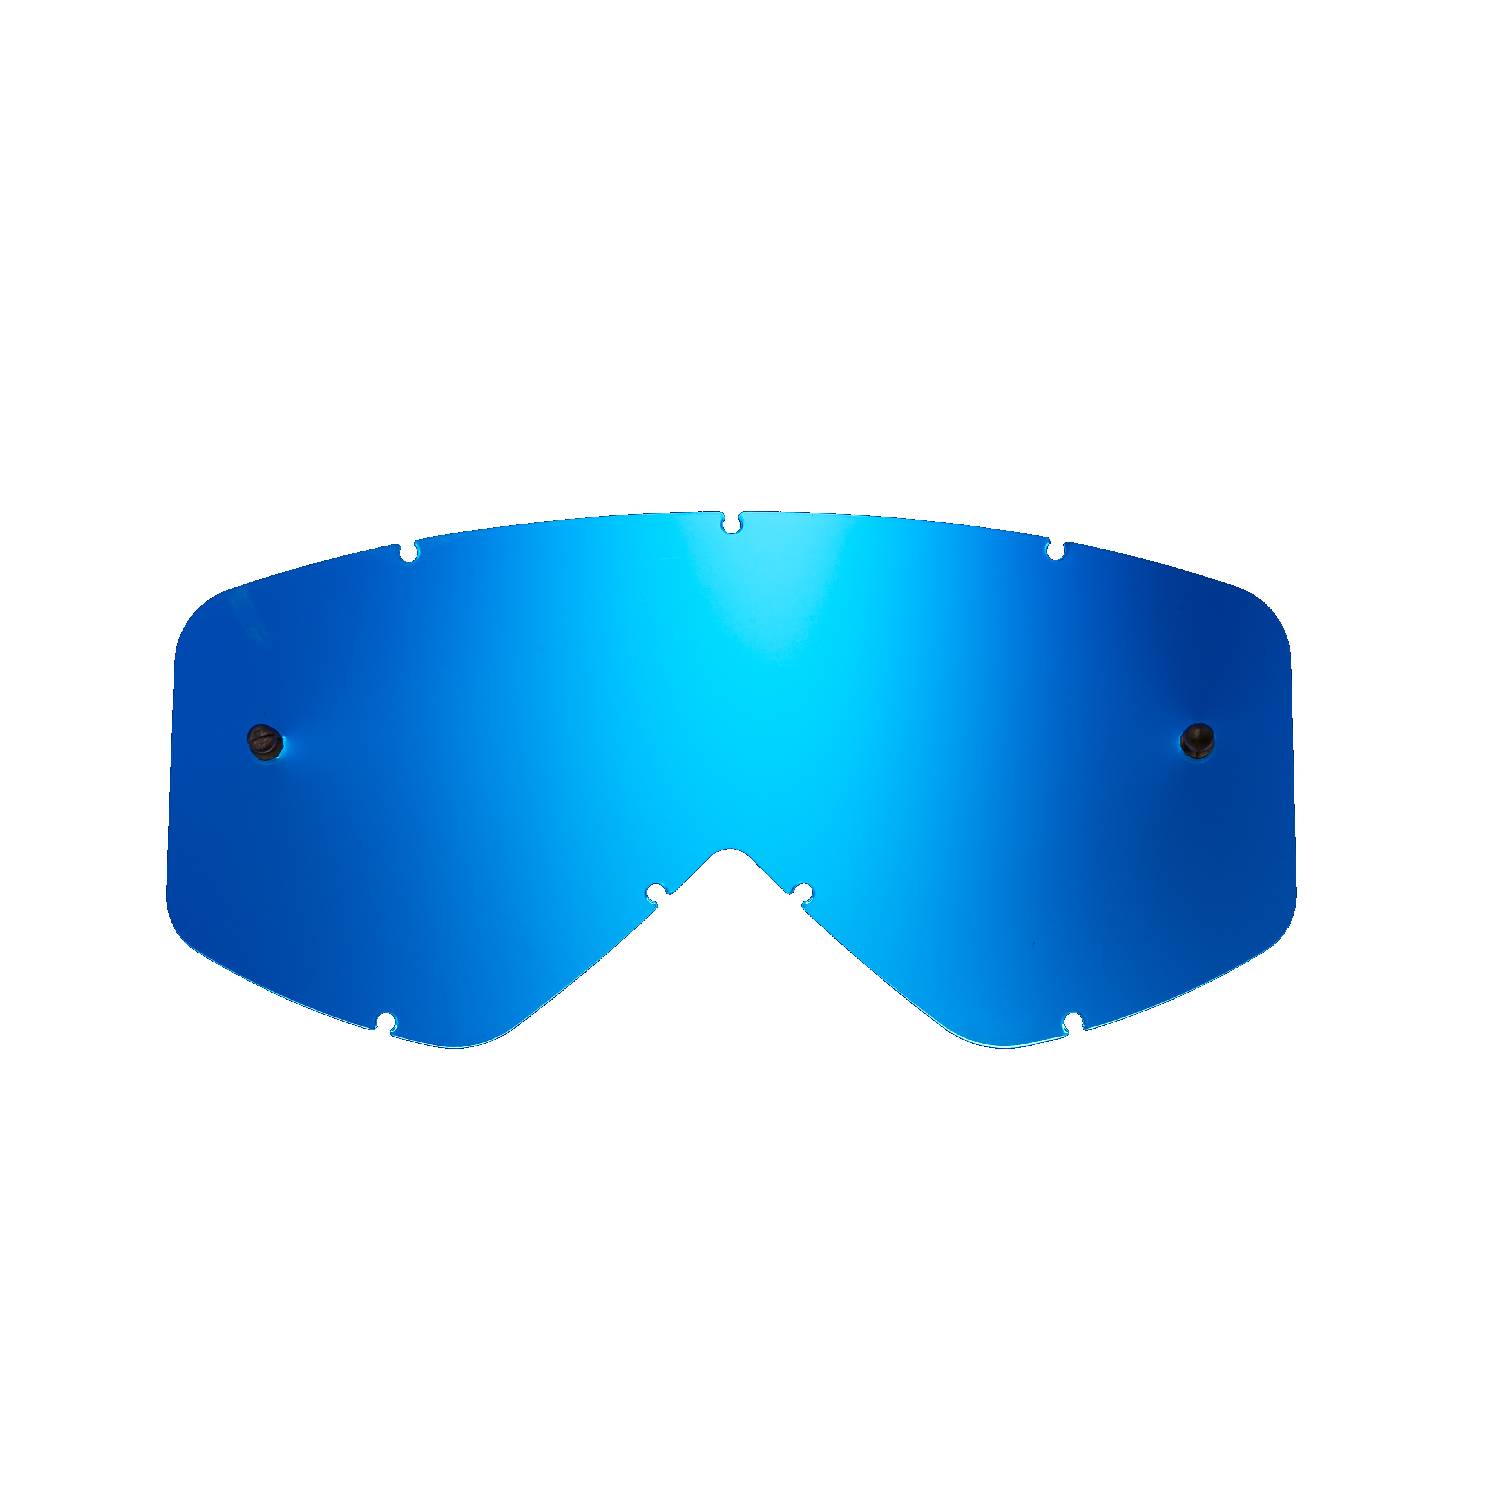 Lente di ricambio blu specchiato compatibile per occhiale/maschera Smith Fuel / Intake / V1 / V2